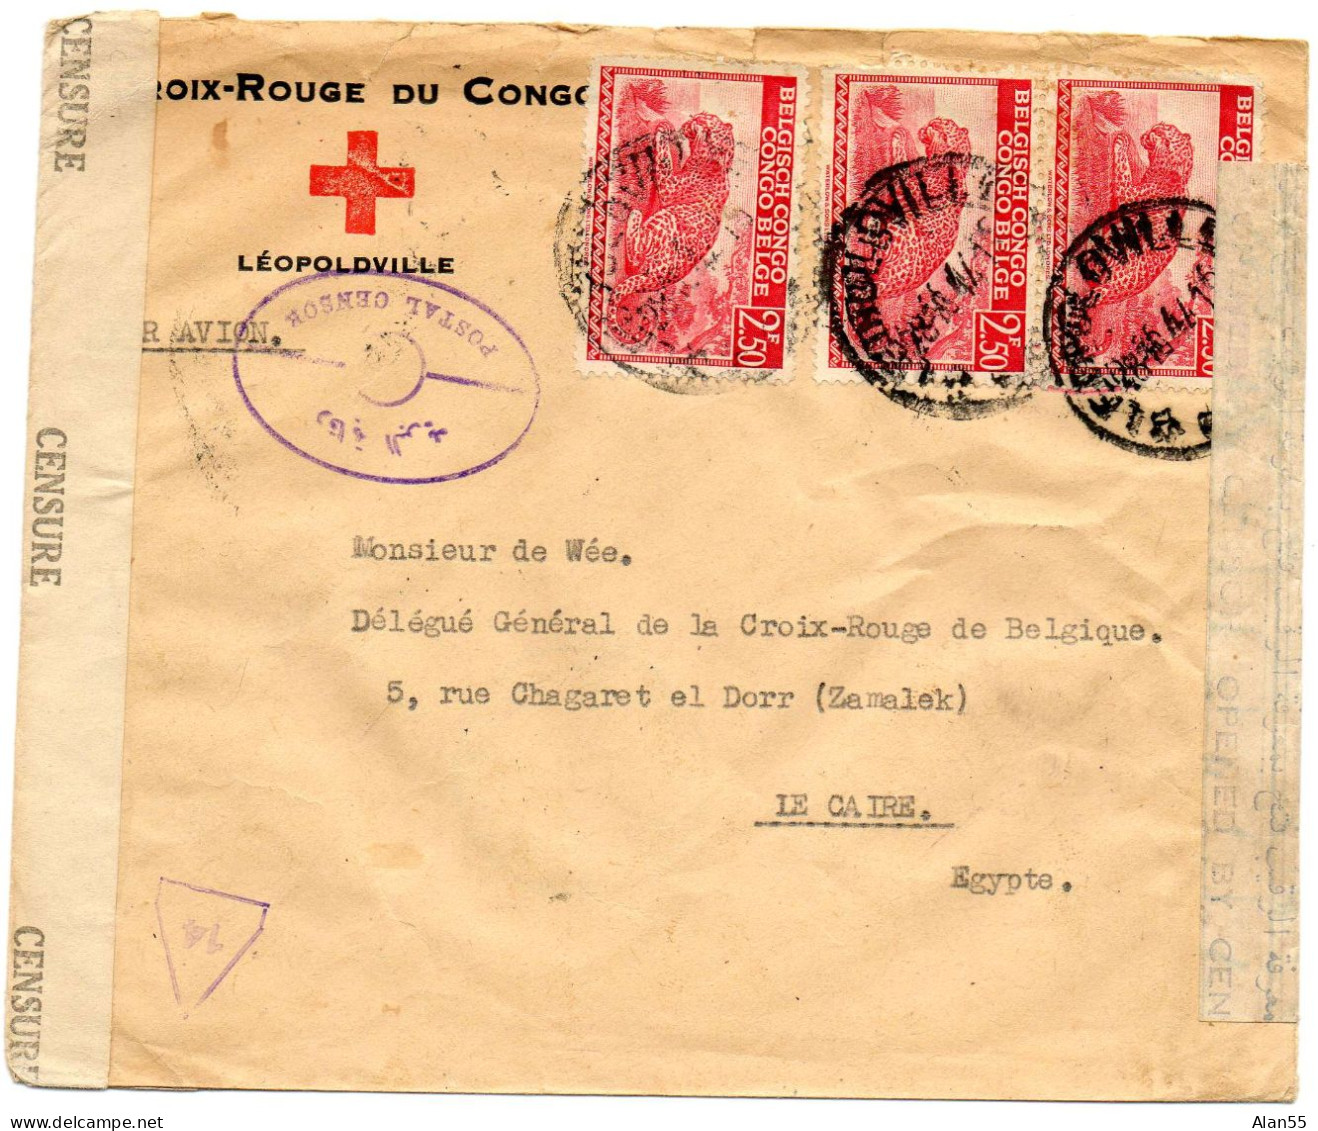 CONGO BELGE. 1944. CROIX-ROUGE DU CONGO A LEOPOLDVILLE POUR CROIX-ROUGE BELGE EN EGYPTE. DOUBLE CENSURE. - Briefe U. Dokumente